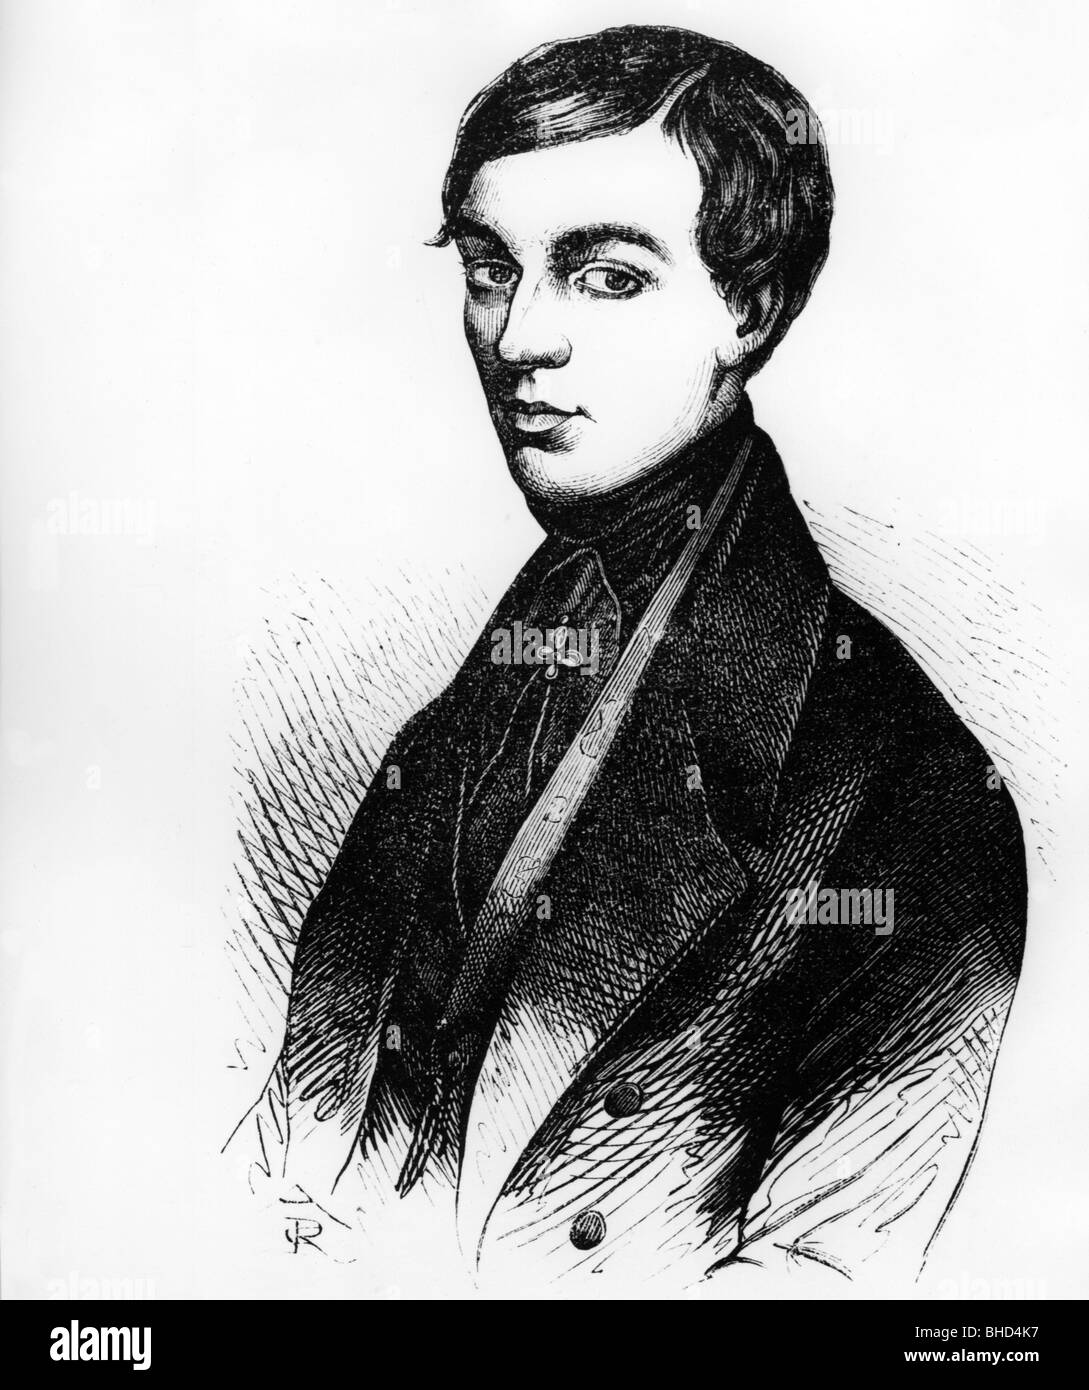 DASE, Zacharias, 23.6.1824 - 11.9.1861, calculatrice mentale allemande, portrait, Banque D'Images